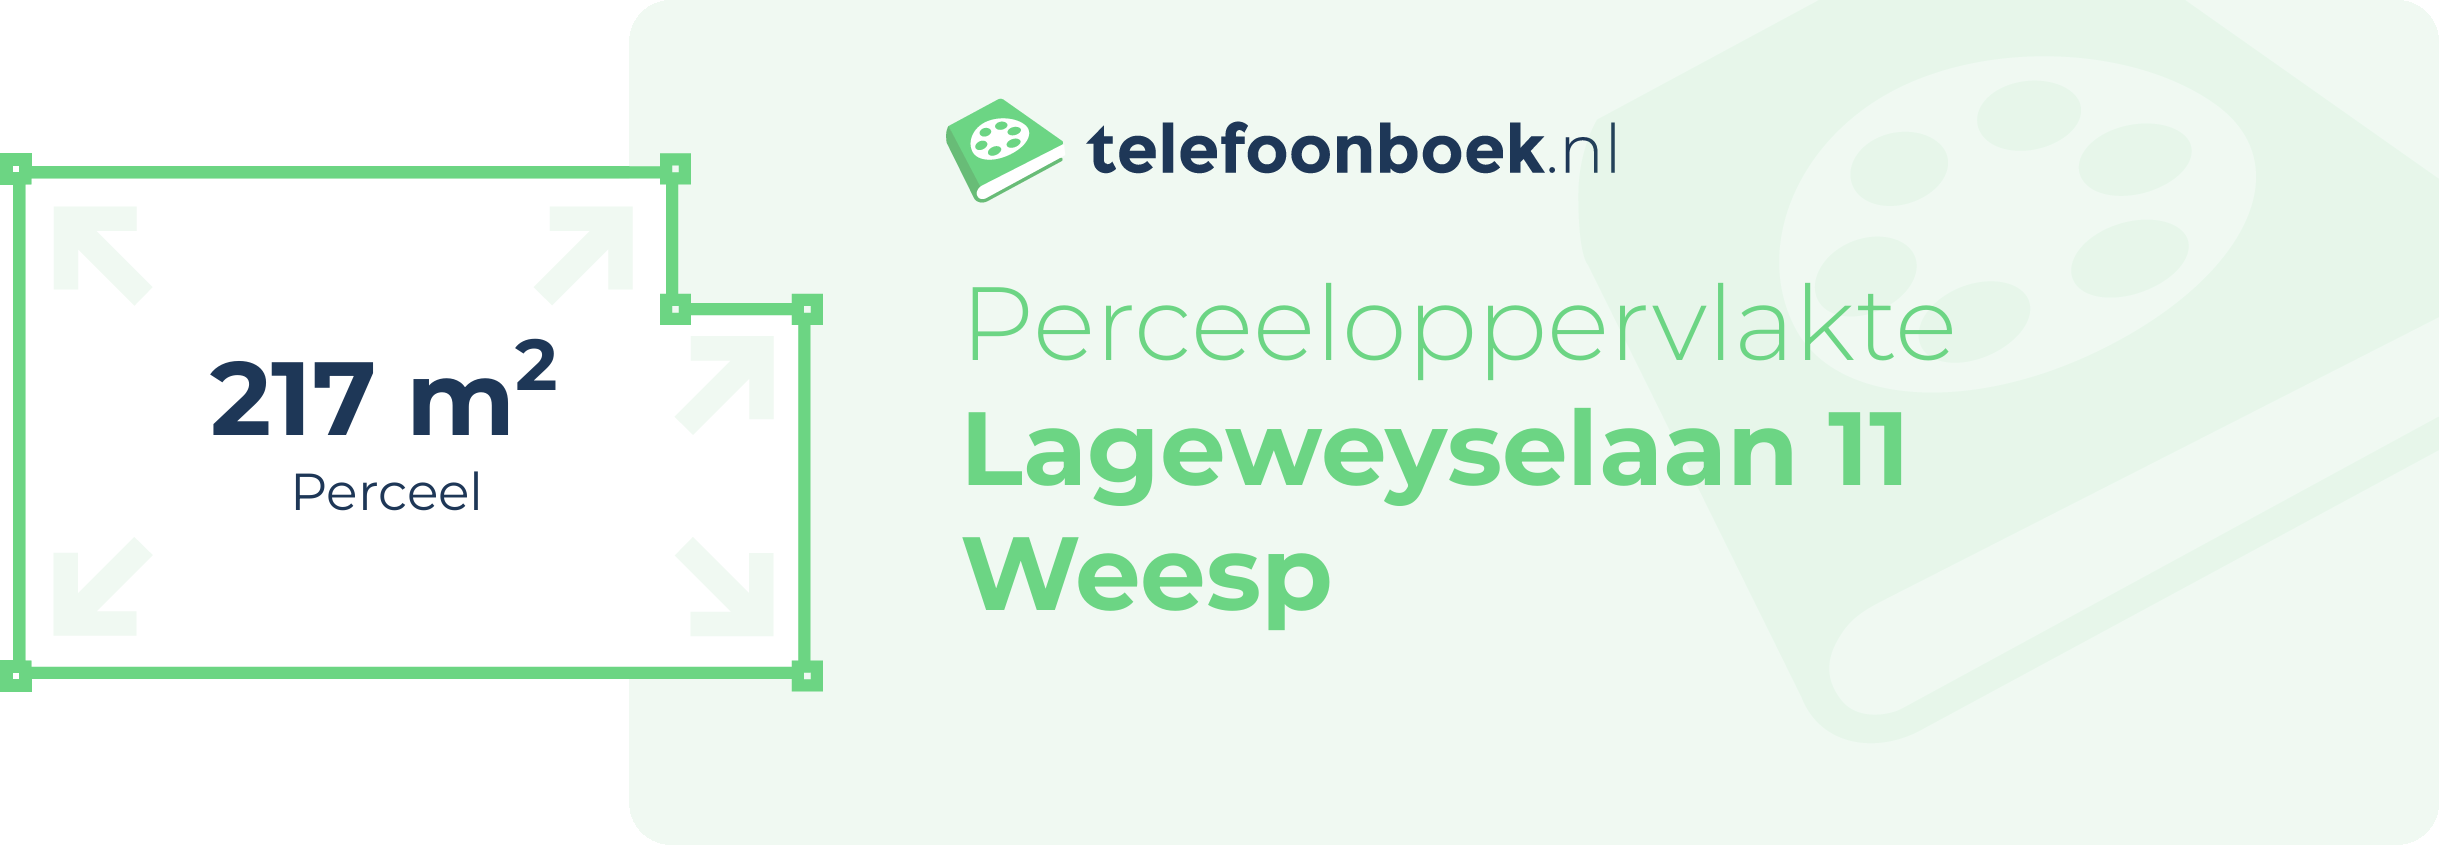 Perceeloppervlakte Lageweyselaan 11 Weesp